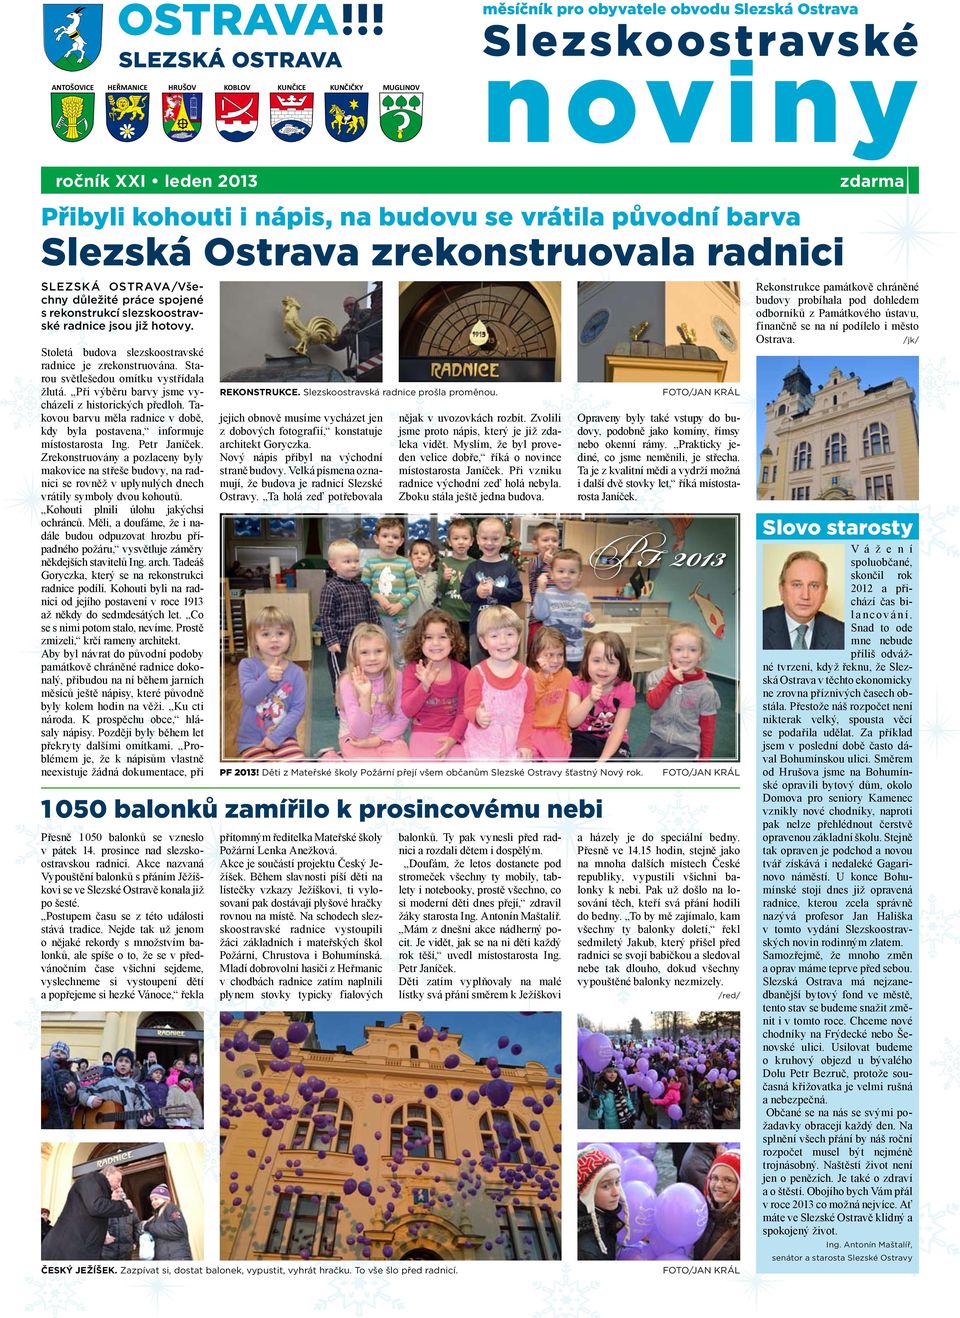 zastupitelstva Slezskástrana Ostrava zrekonstruovala radnici 5 strana 7 zastřelili v Rusku s podzámčím strana 2 